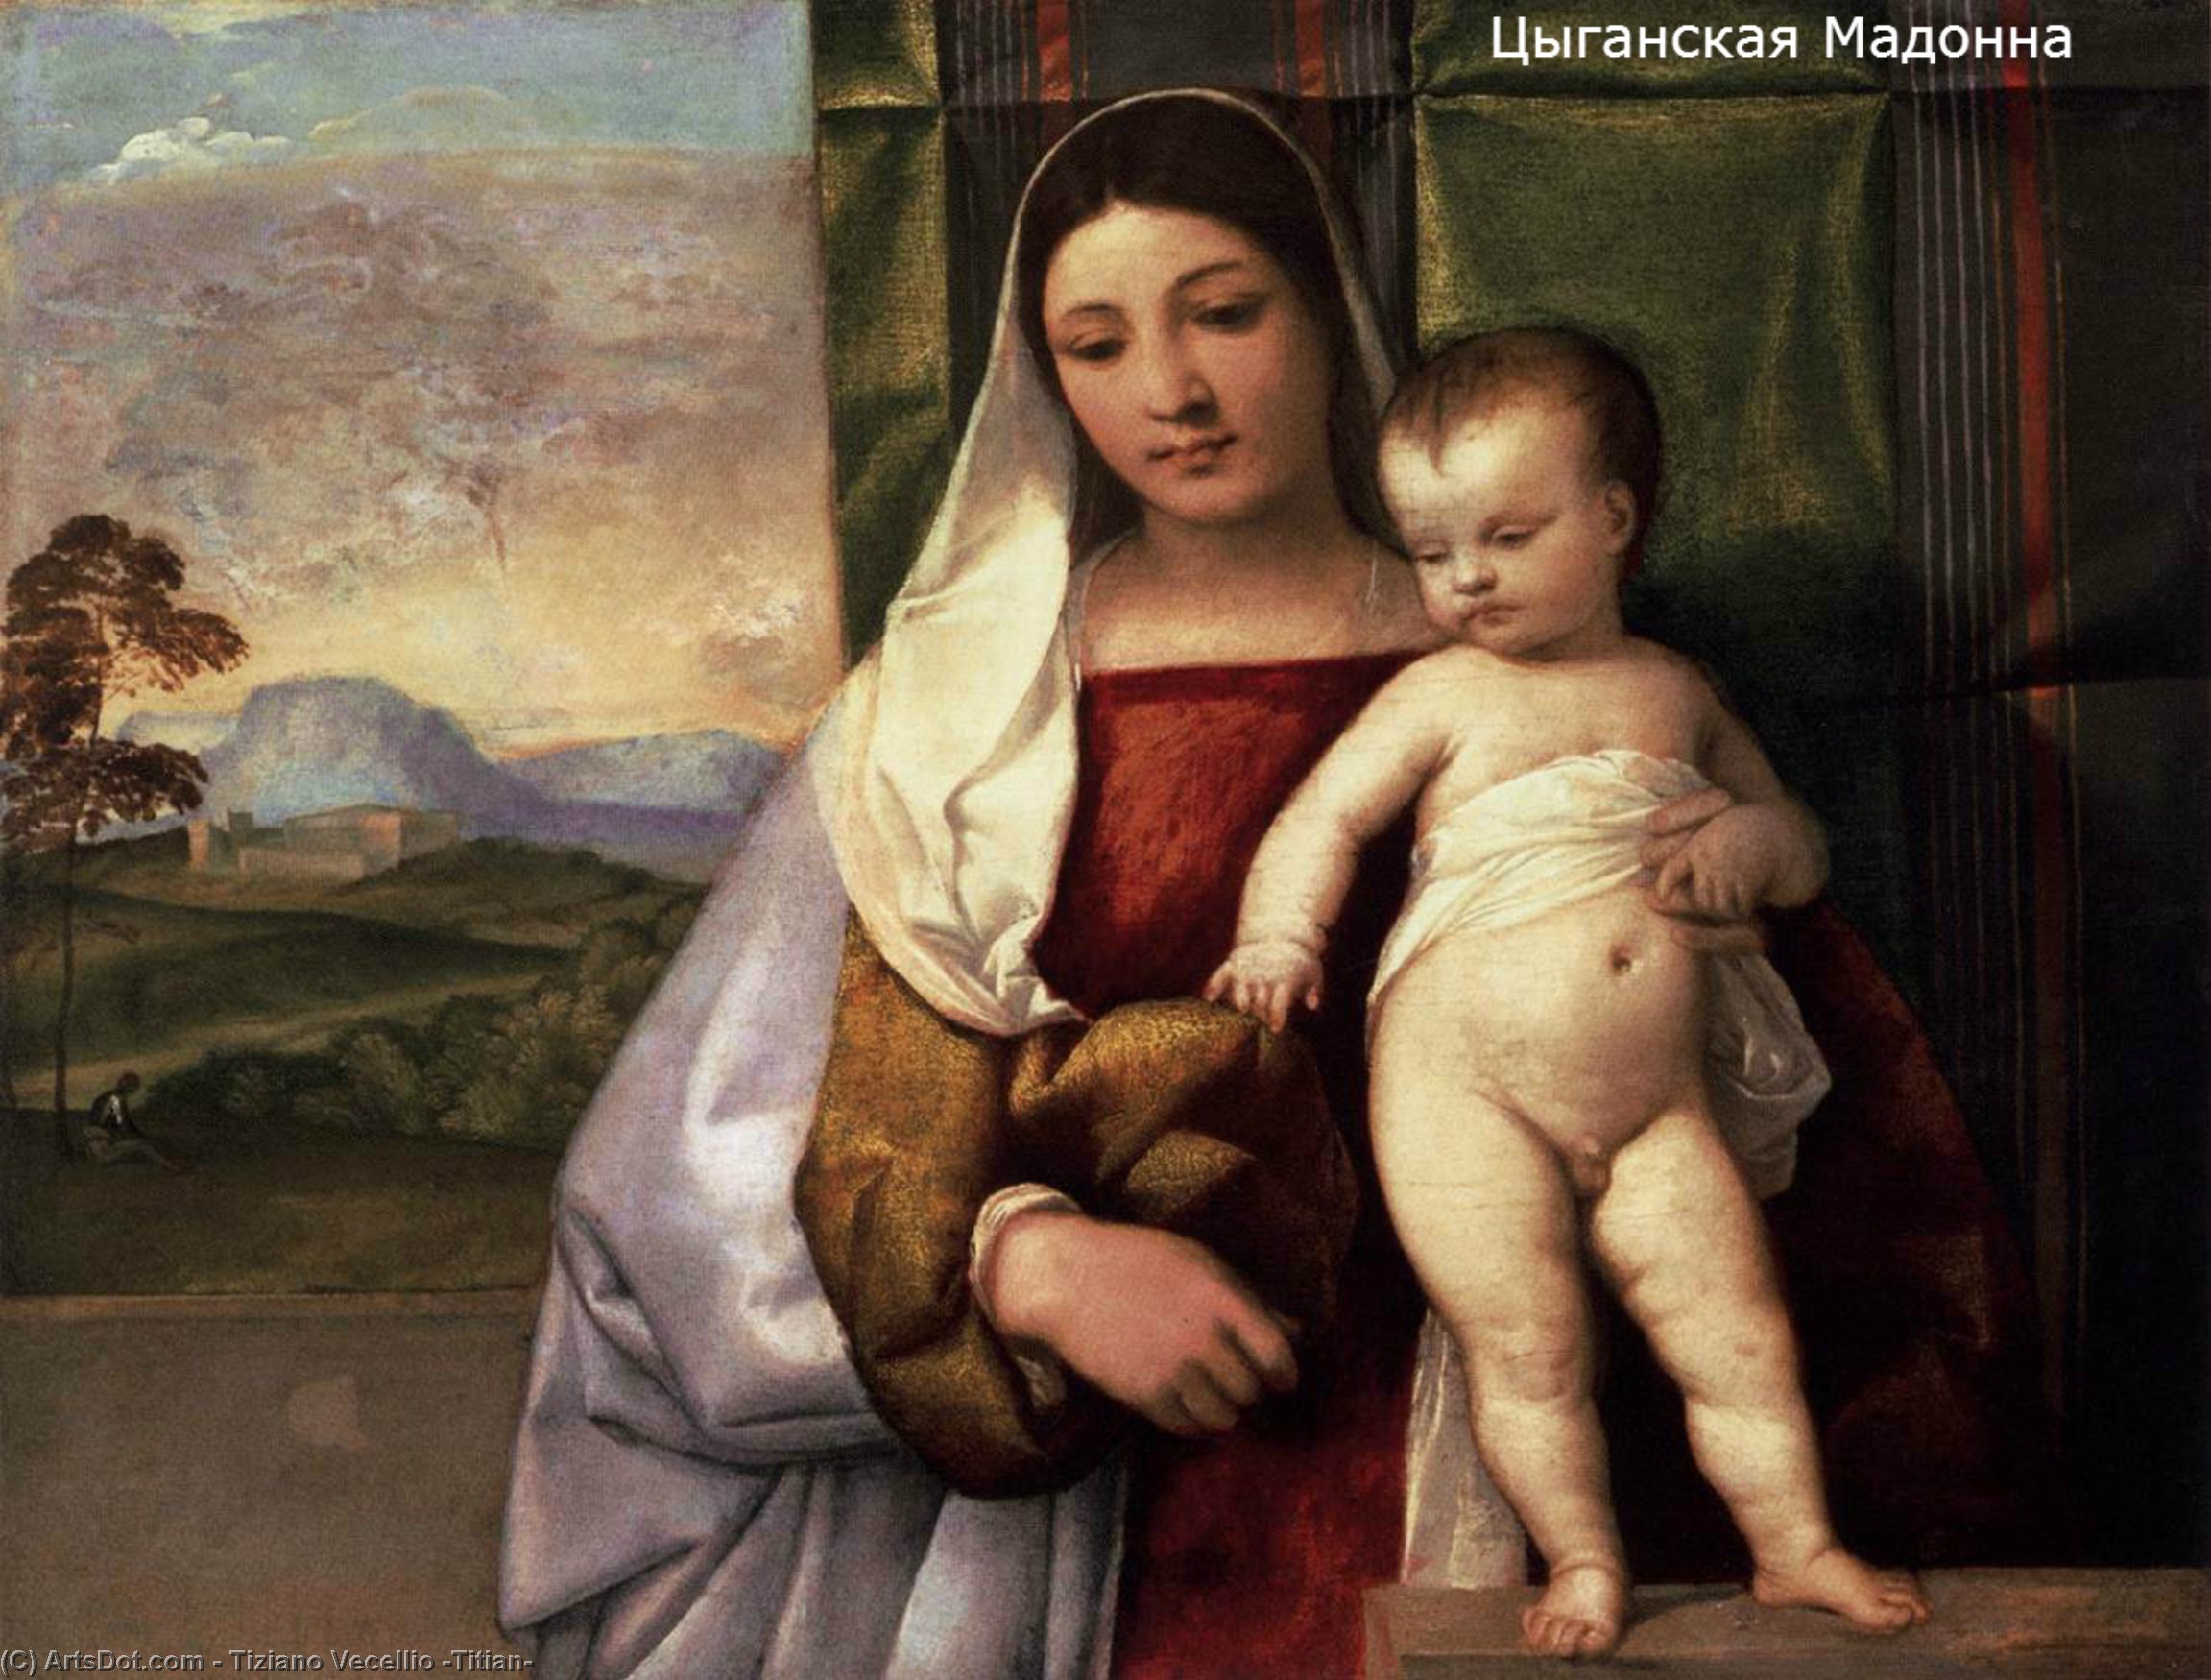 Любовь эпоху возрождения. Тициан Вечеллио цыганская Мадонна. Тициан цыганская Мадонна картина. «Цыганская Мадонна» (1512);. Джованни Беллини Мадонна с младенцем.